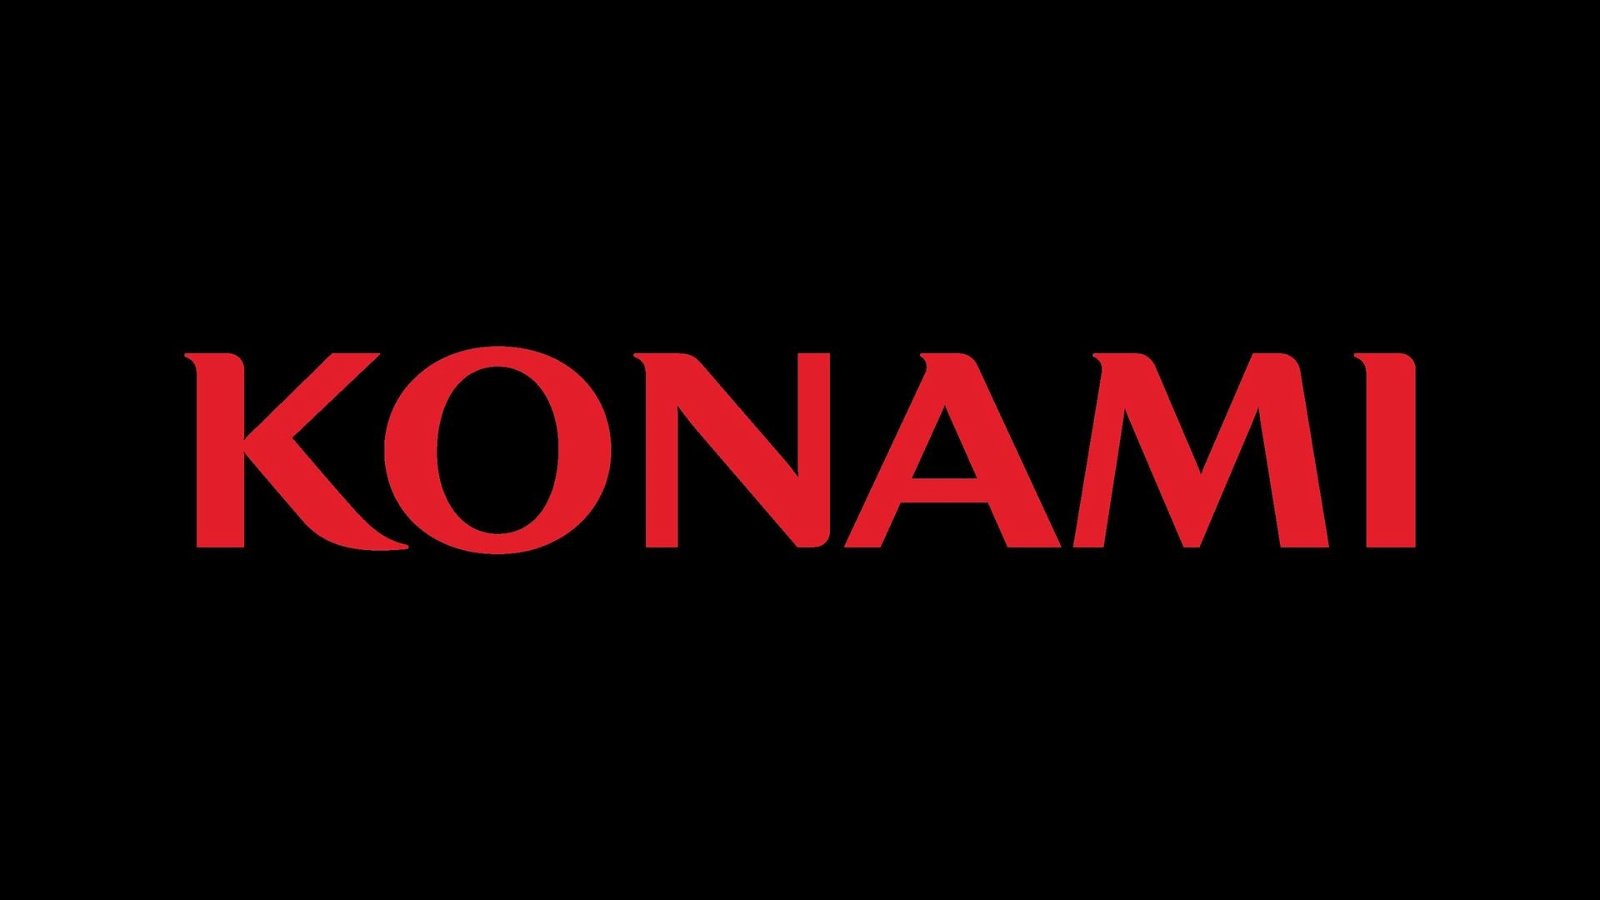 Mentre tutti licenziano, Konami alza gli stipendi